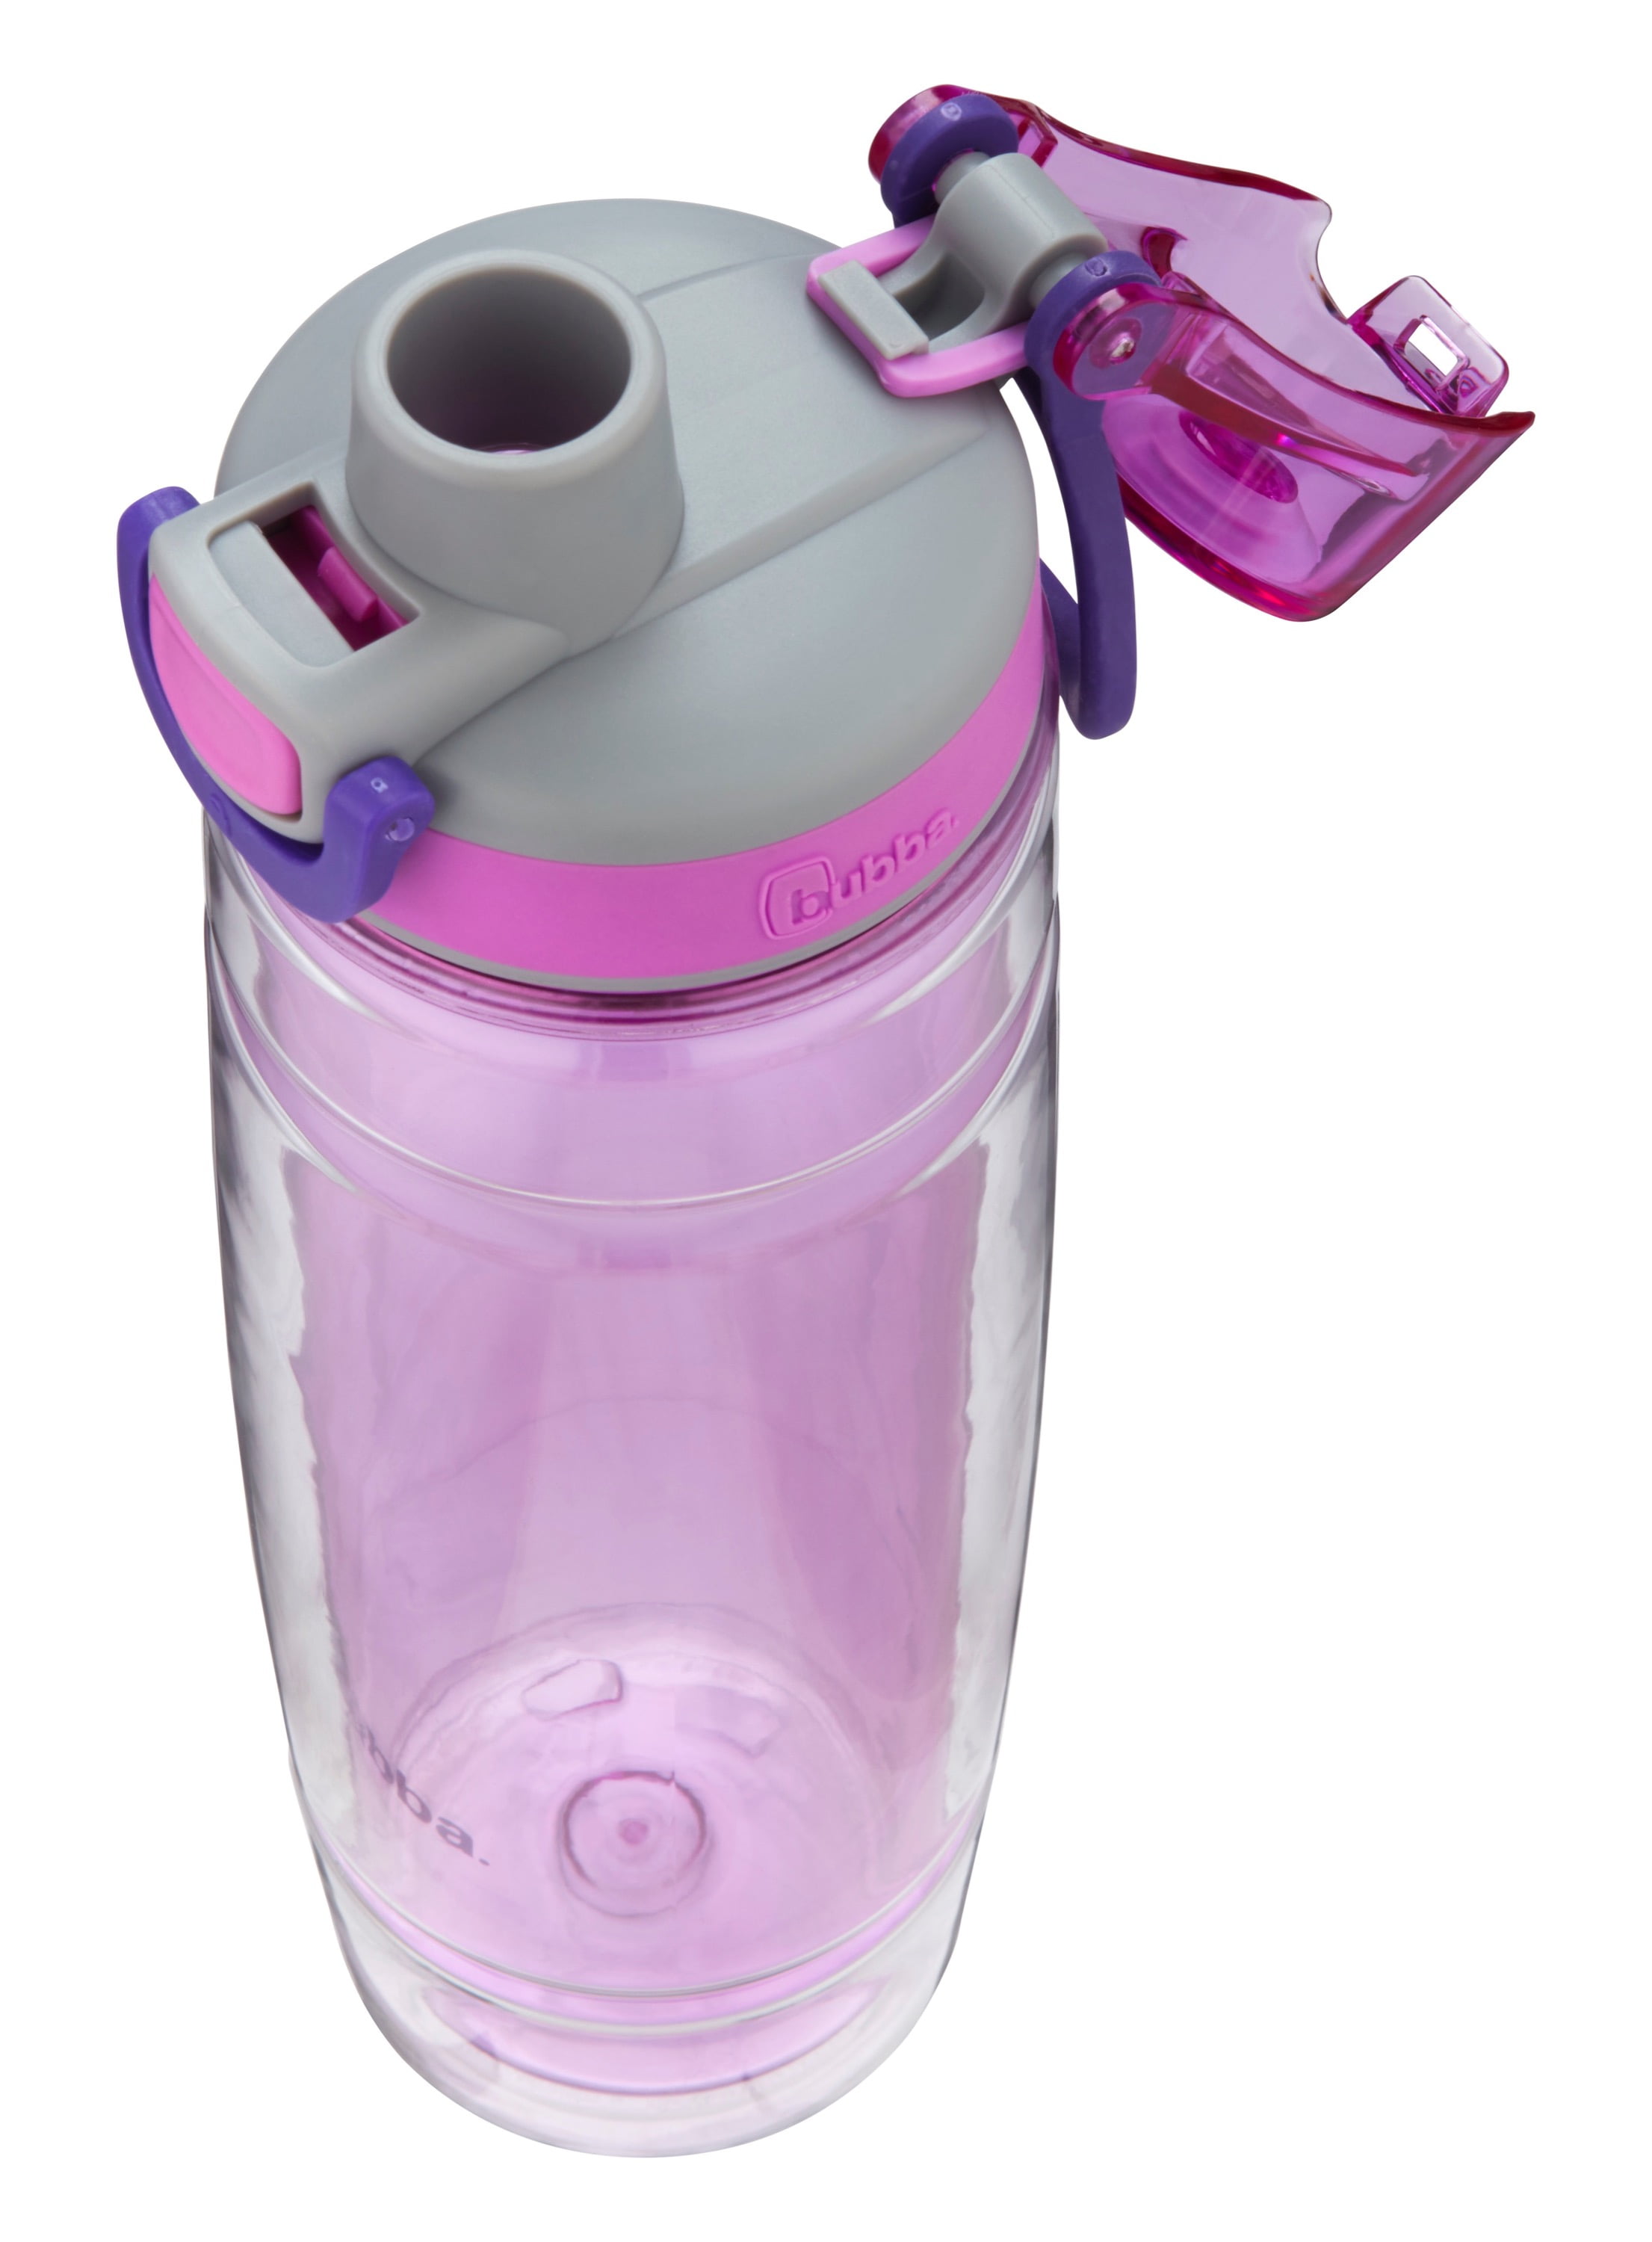 24oz Insulated Water Bottle with Flip-up Straw (Dark Purple)